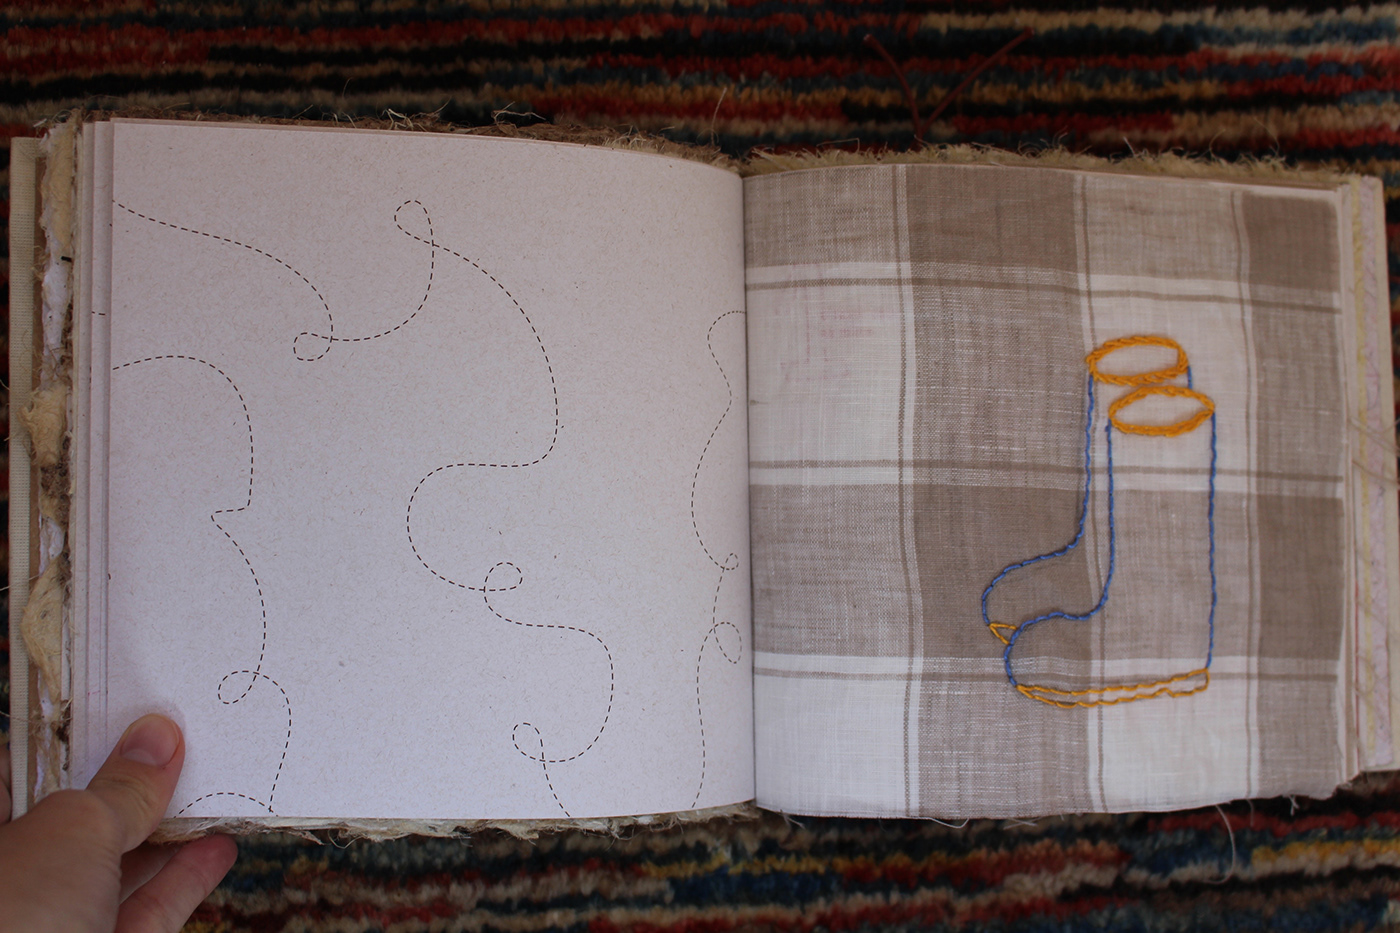 bordado brincar criança TCC ufmg artesanato arquitetura e urbanismo craft paper Embroidery textile